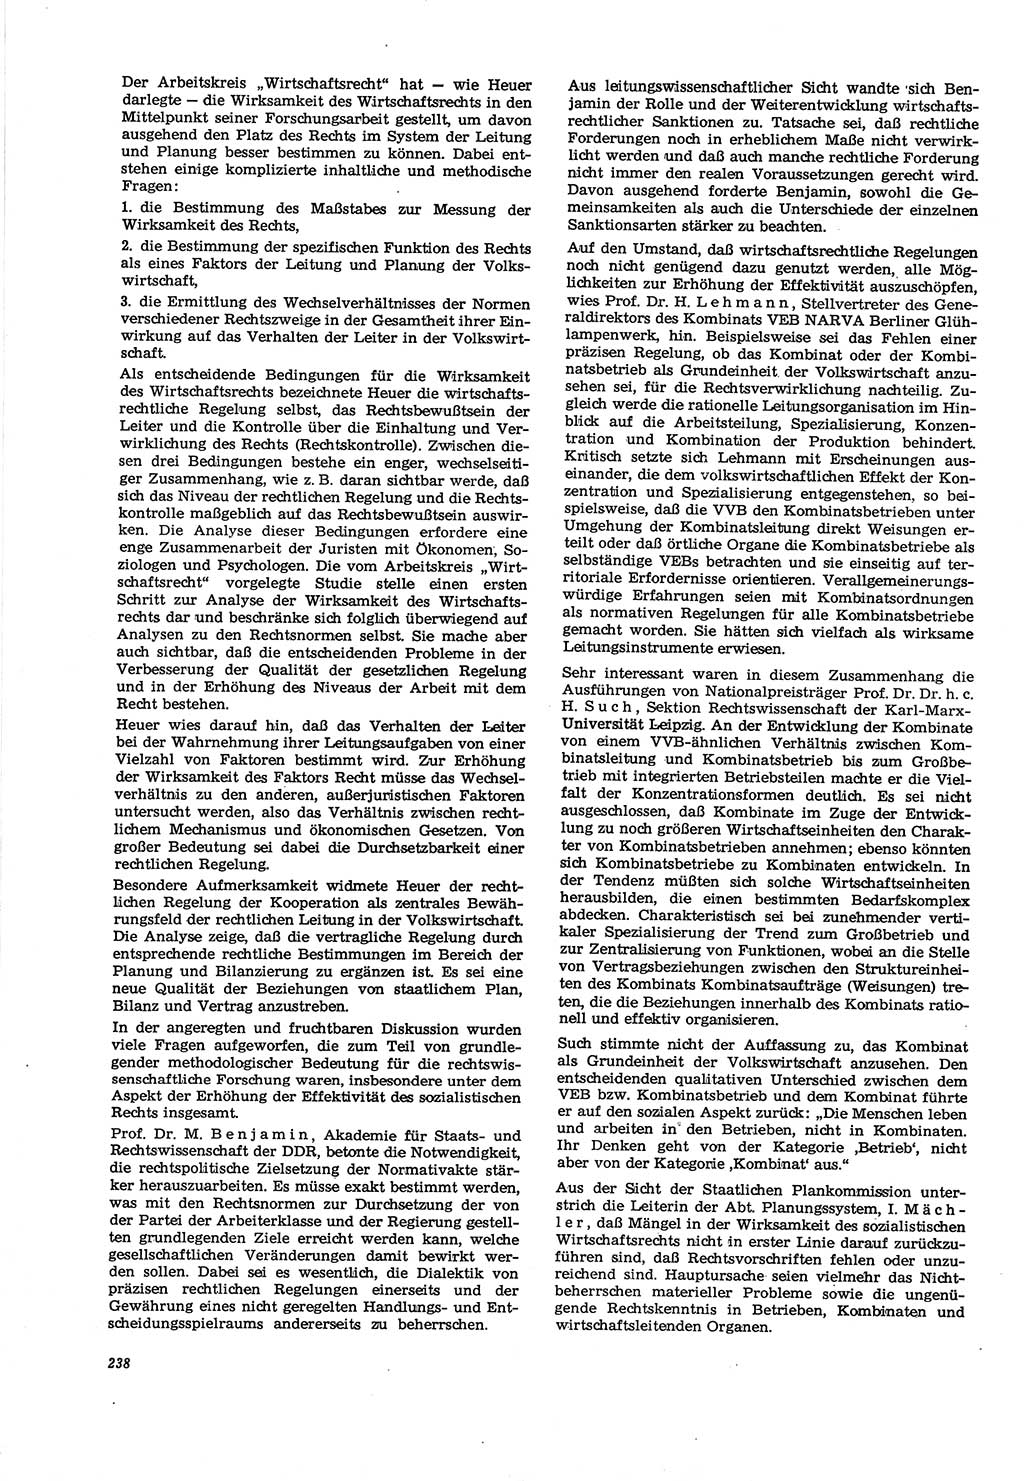 Neue Justiz (NJ), Zeitschrift für Recht und Rechtswissenschaft [Deutsche Demokratische Republik (DDR)], 30. Jahrgang 1976, Seite 238 (NJ DDR 1976, S. 238)